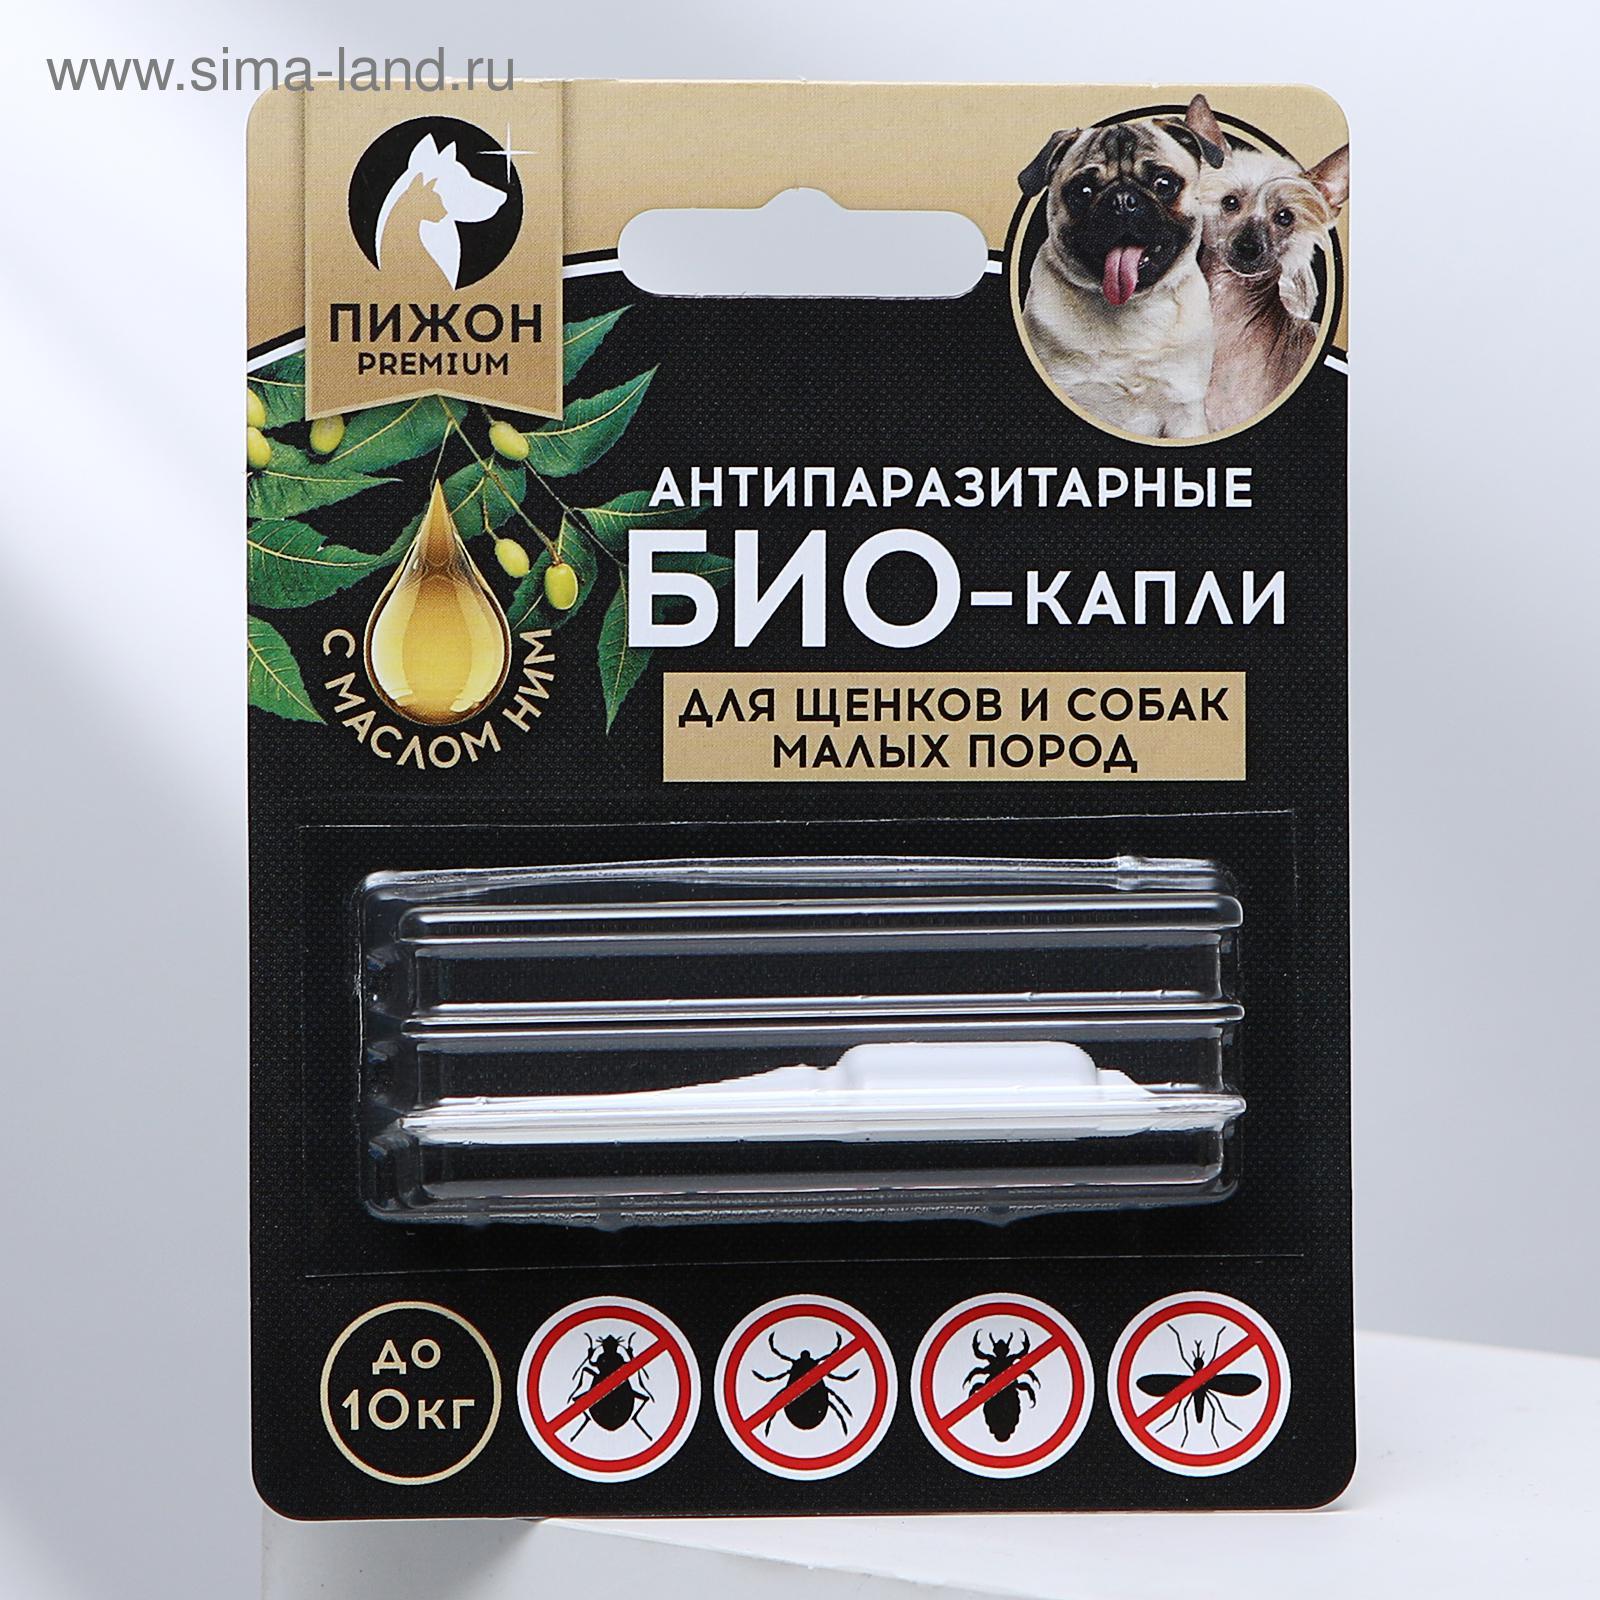 Антипаразитарные БИОкапли "Пижон Premium" для щенков и собак малых пород, до 10кг, 1мл
